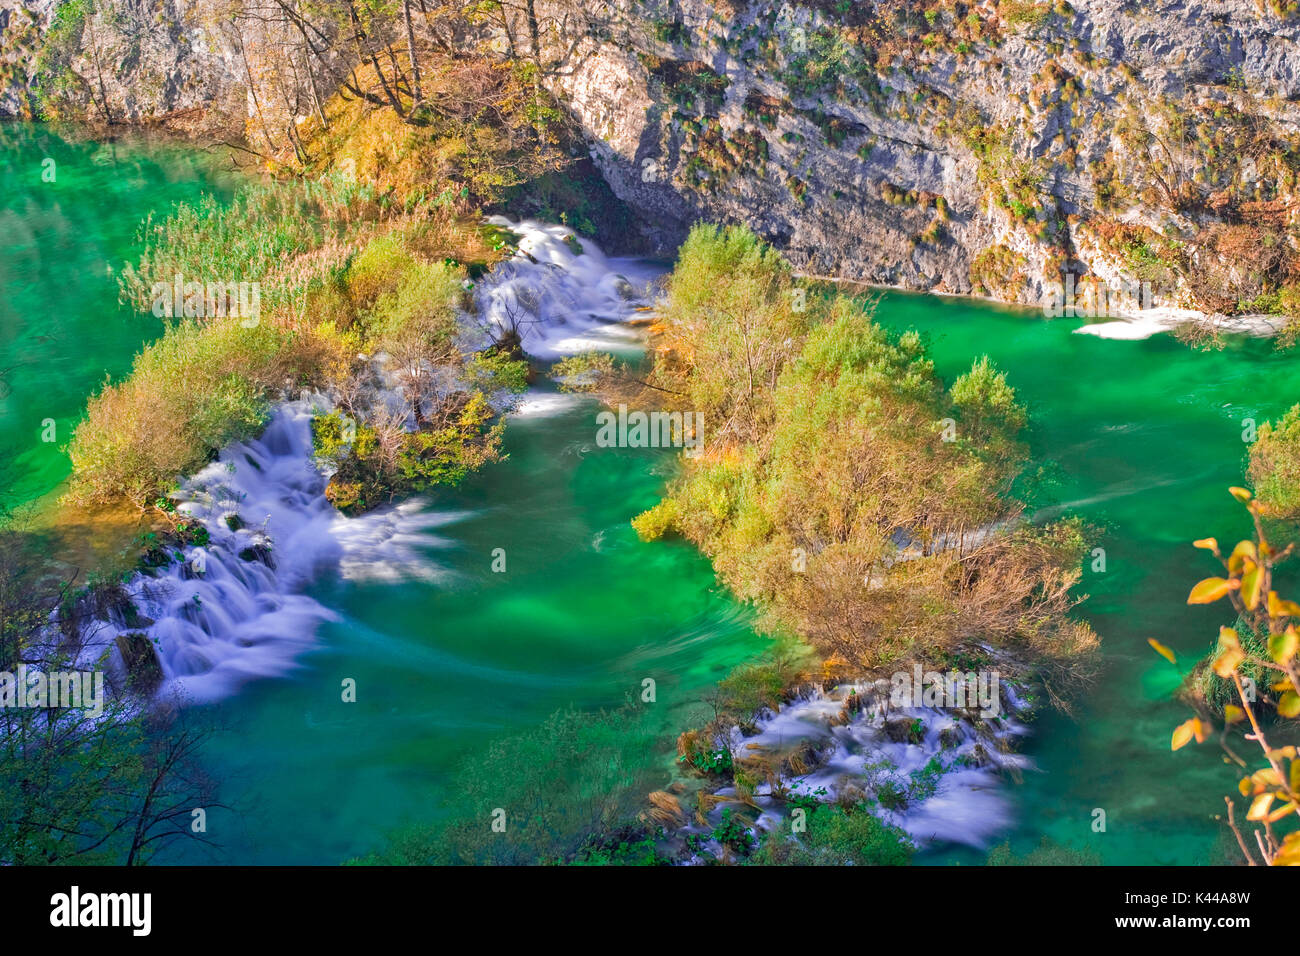 El Parque Nacional de Plitvice en Croacia se encuentra en una zona de densos bosques , rica en ríos, lagos y cascadas, y especialmente en otoño, creando un paraíso de extraordinaria belleza natural que forma parte de la lista de Patrimonio Mundial de la UNESCO. Foto de stock